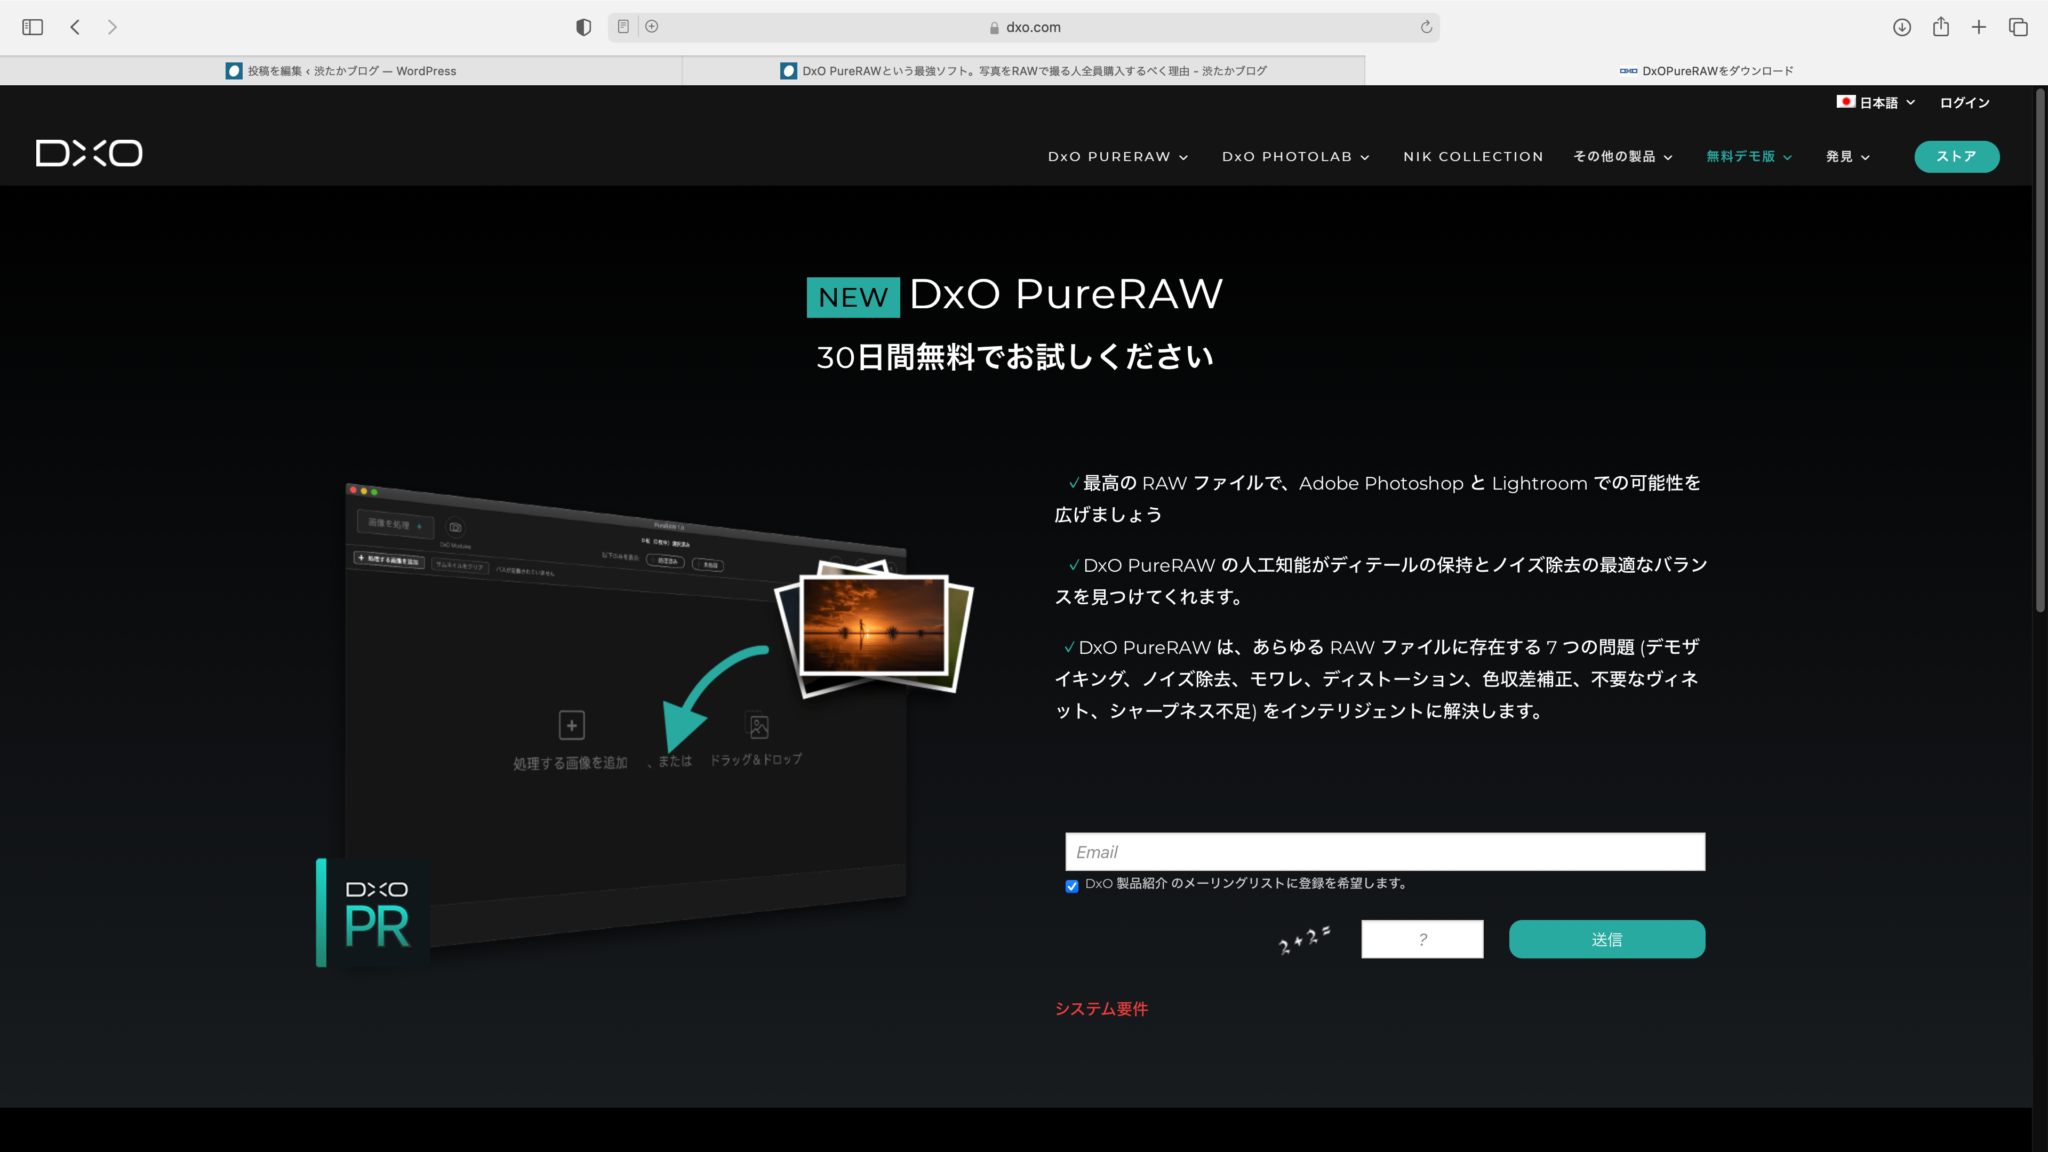 DxO PureRAW 3.3.1.14 free download